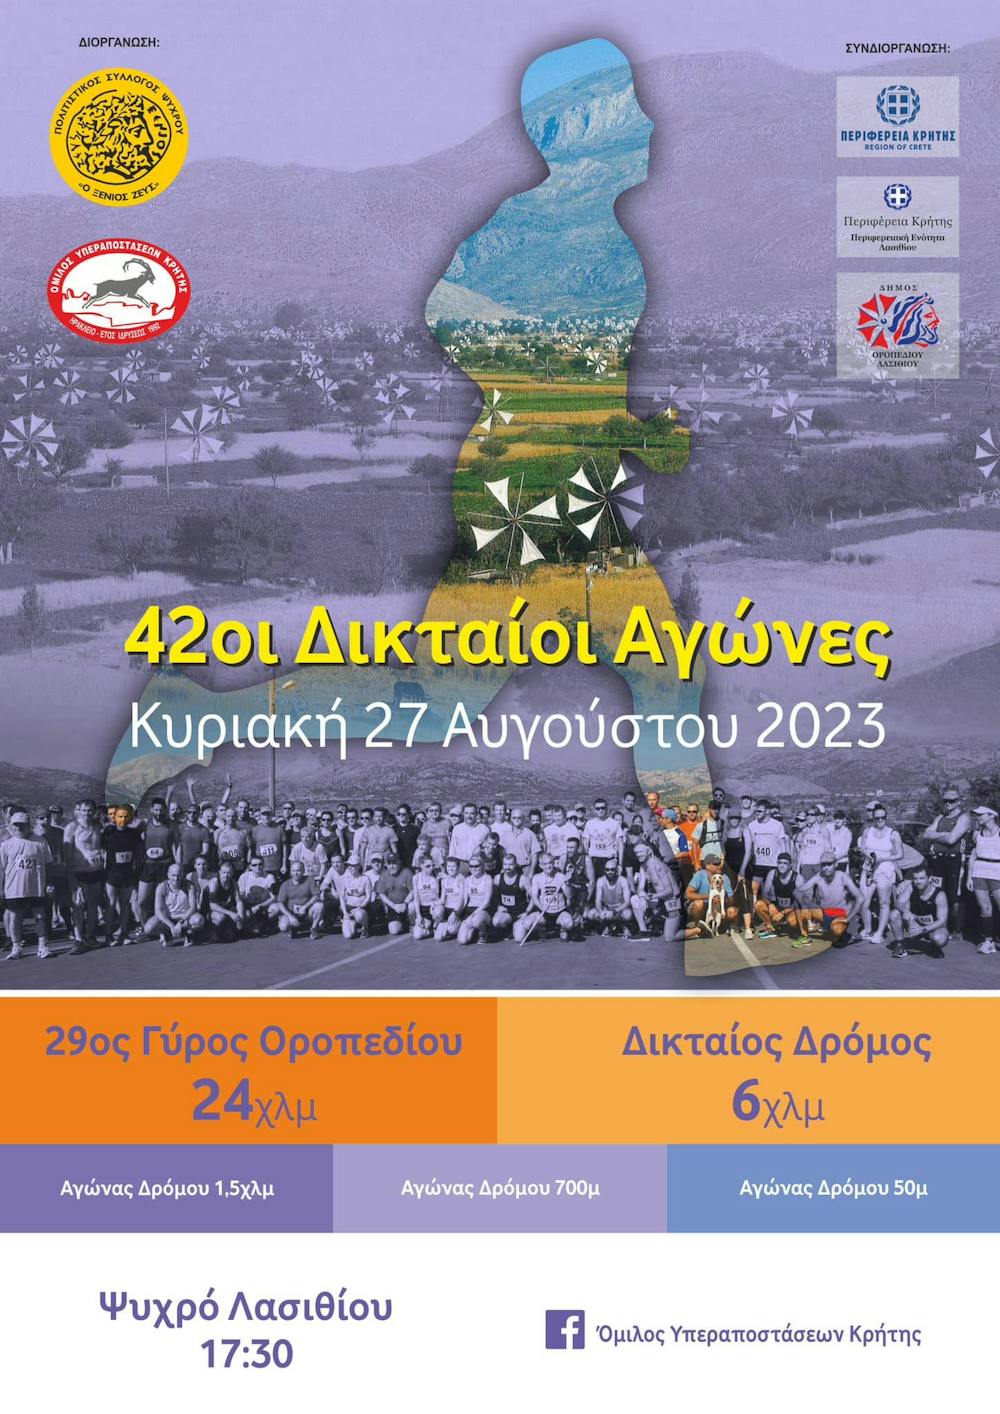 Την Κυριακή 27 Αυγούστου 2023 οι 42οι Δικταίοι Αγώνες (Pic) runbeat.gr 